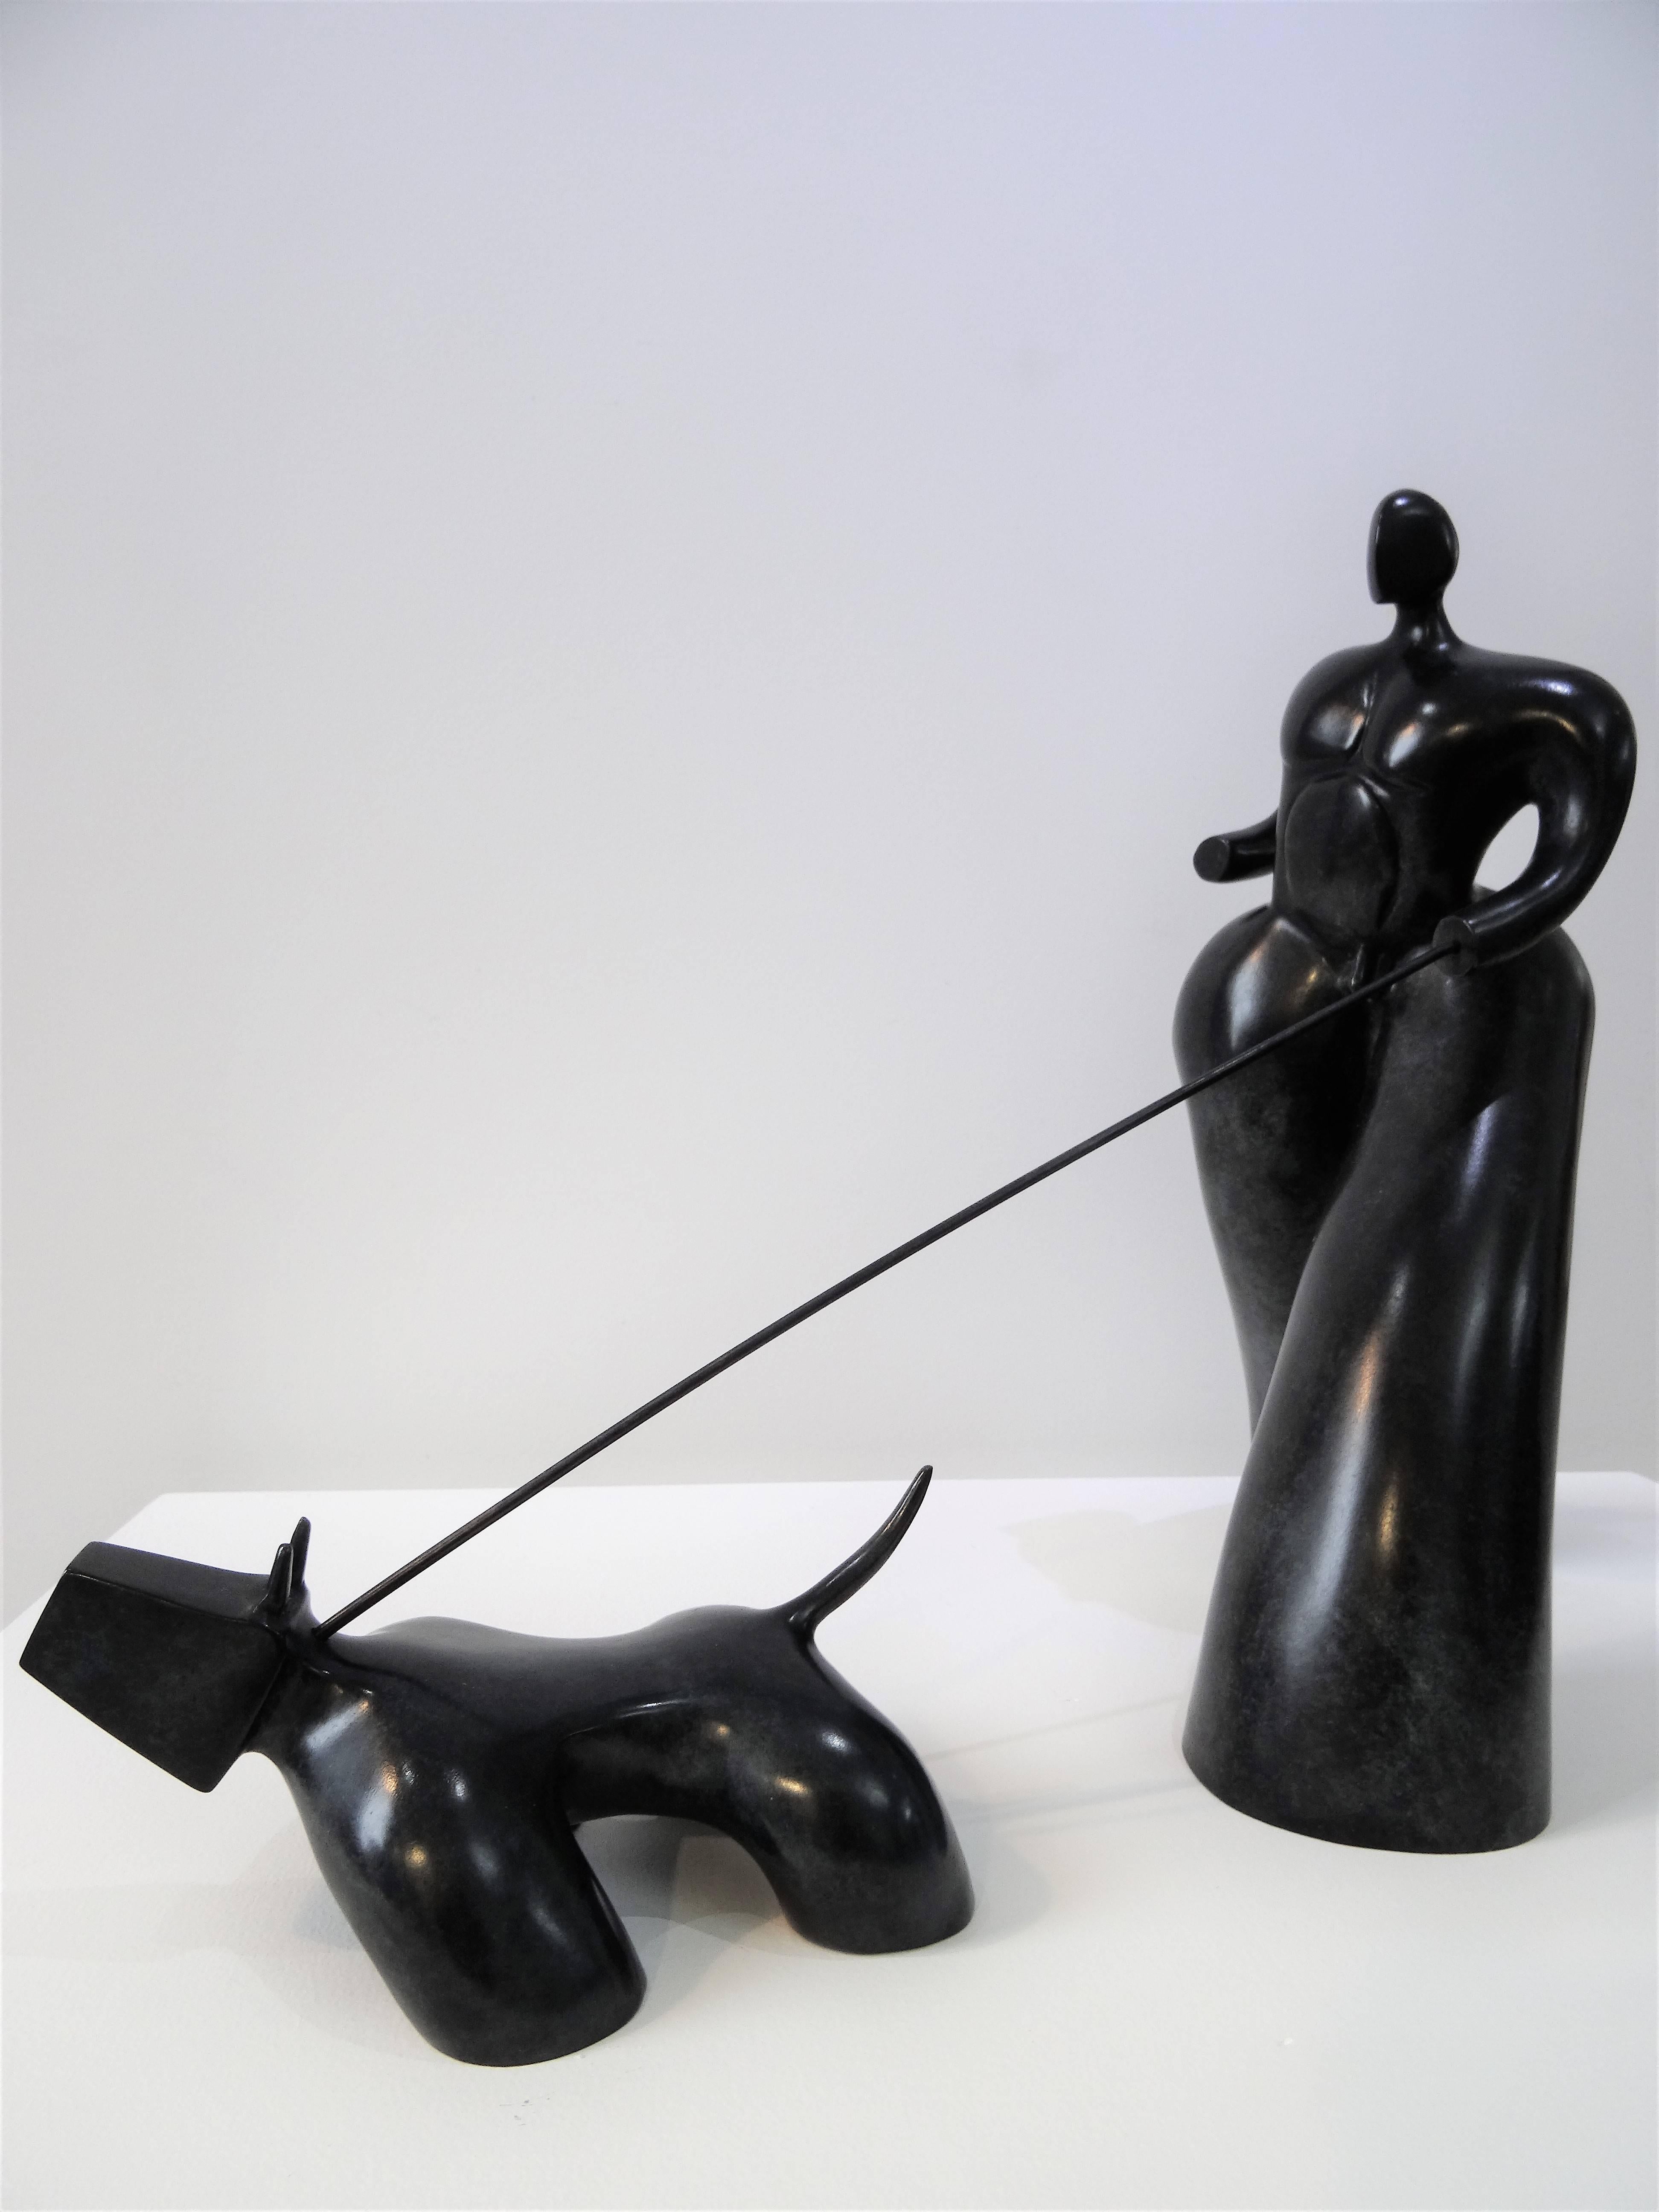 Homme Au Chien - Sculpture by Lolek